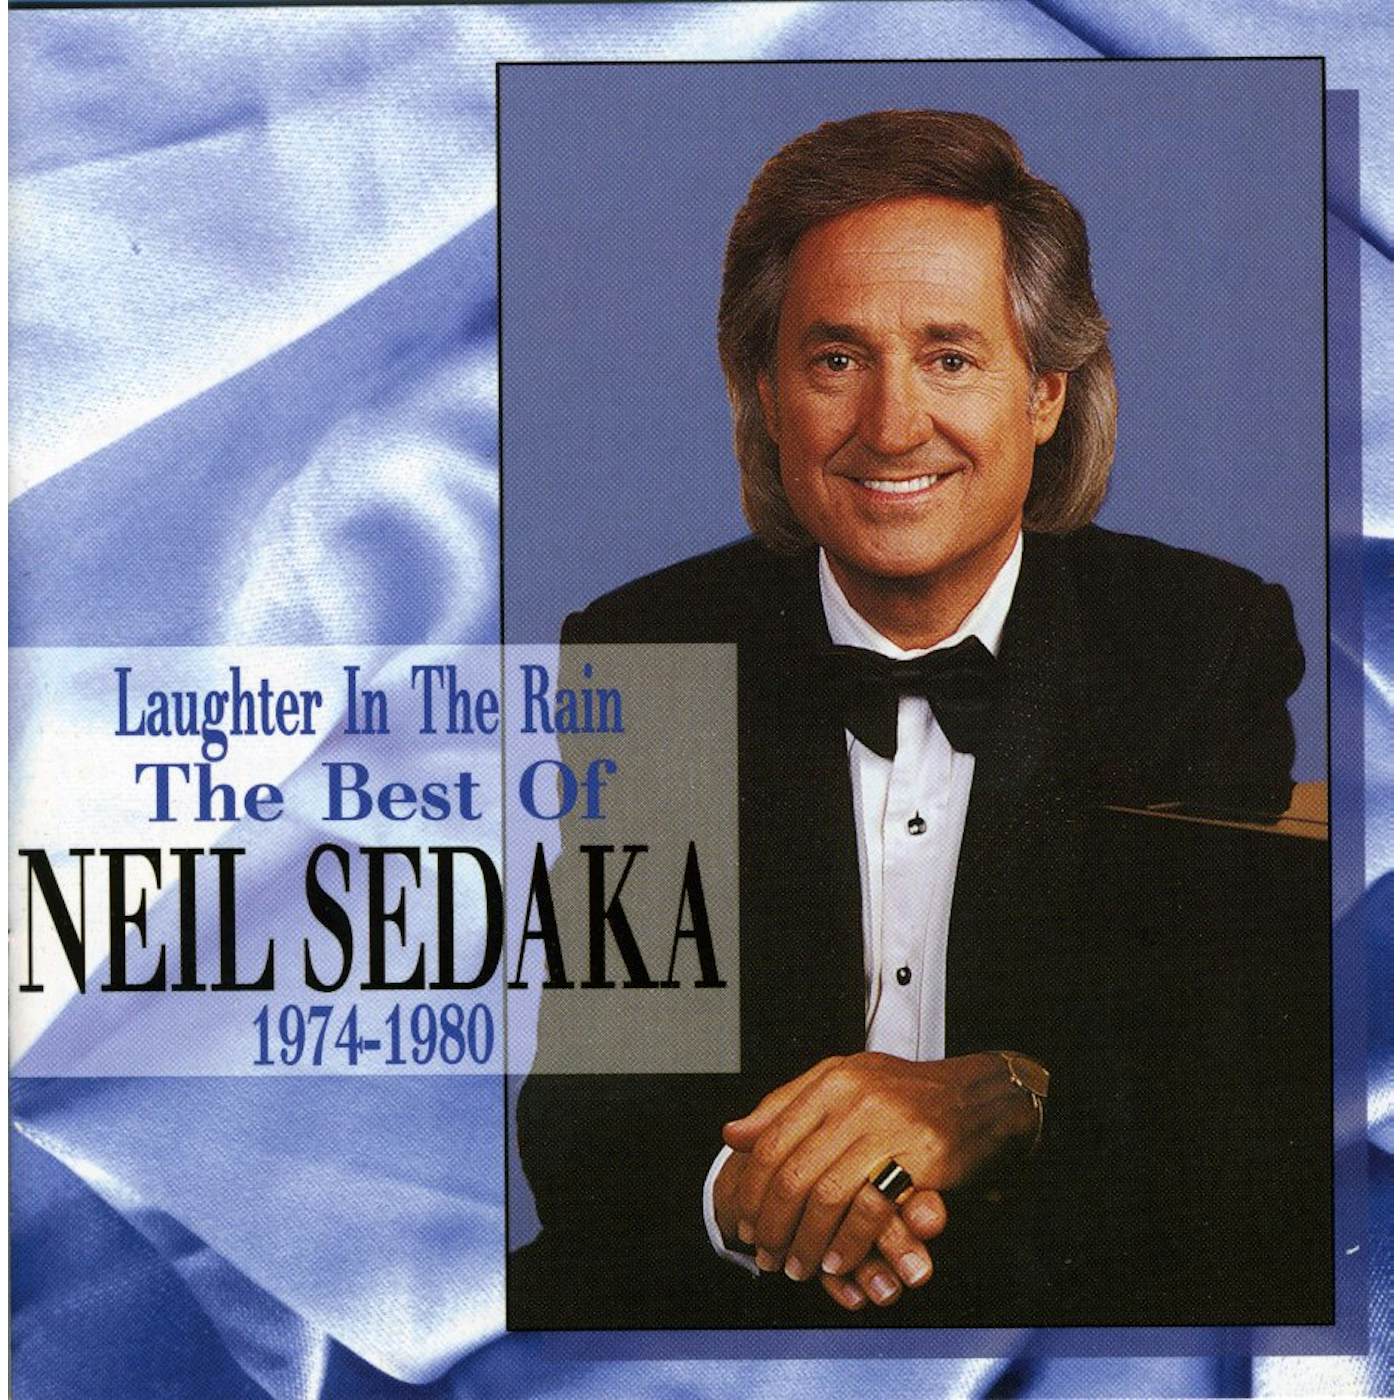 Neil Sedaka LAUGHTER IN THE RAIN: BEST OF CD